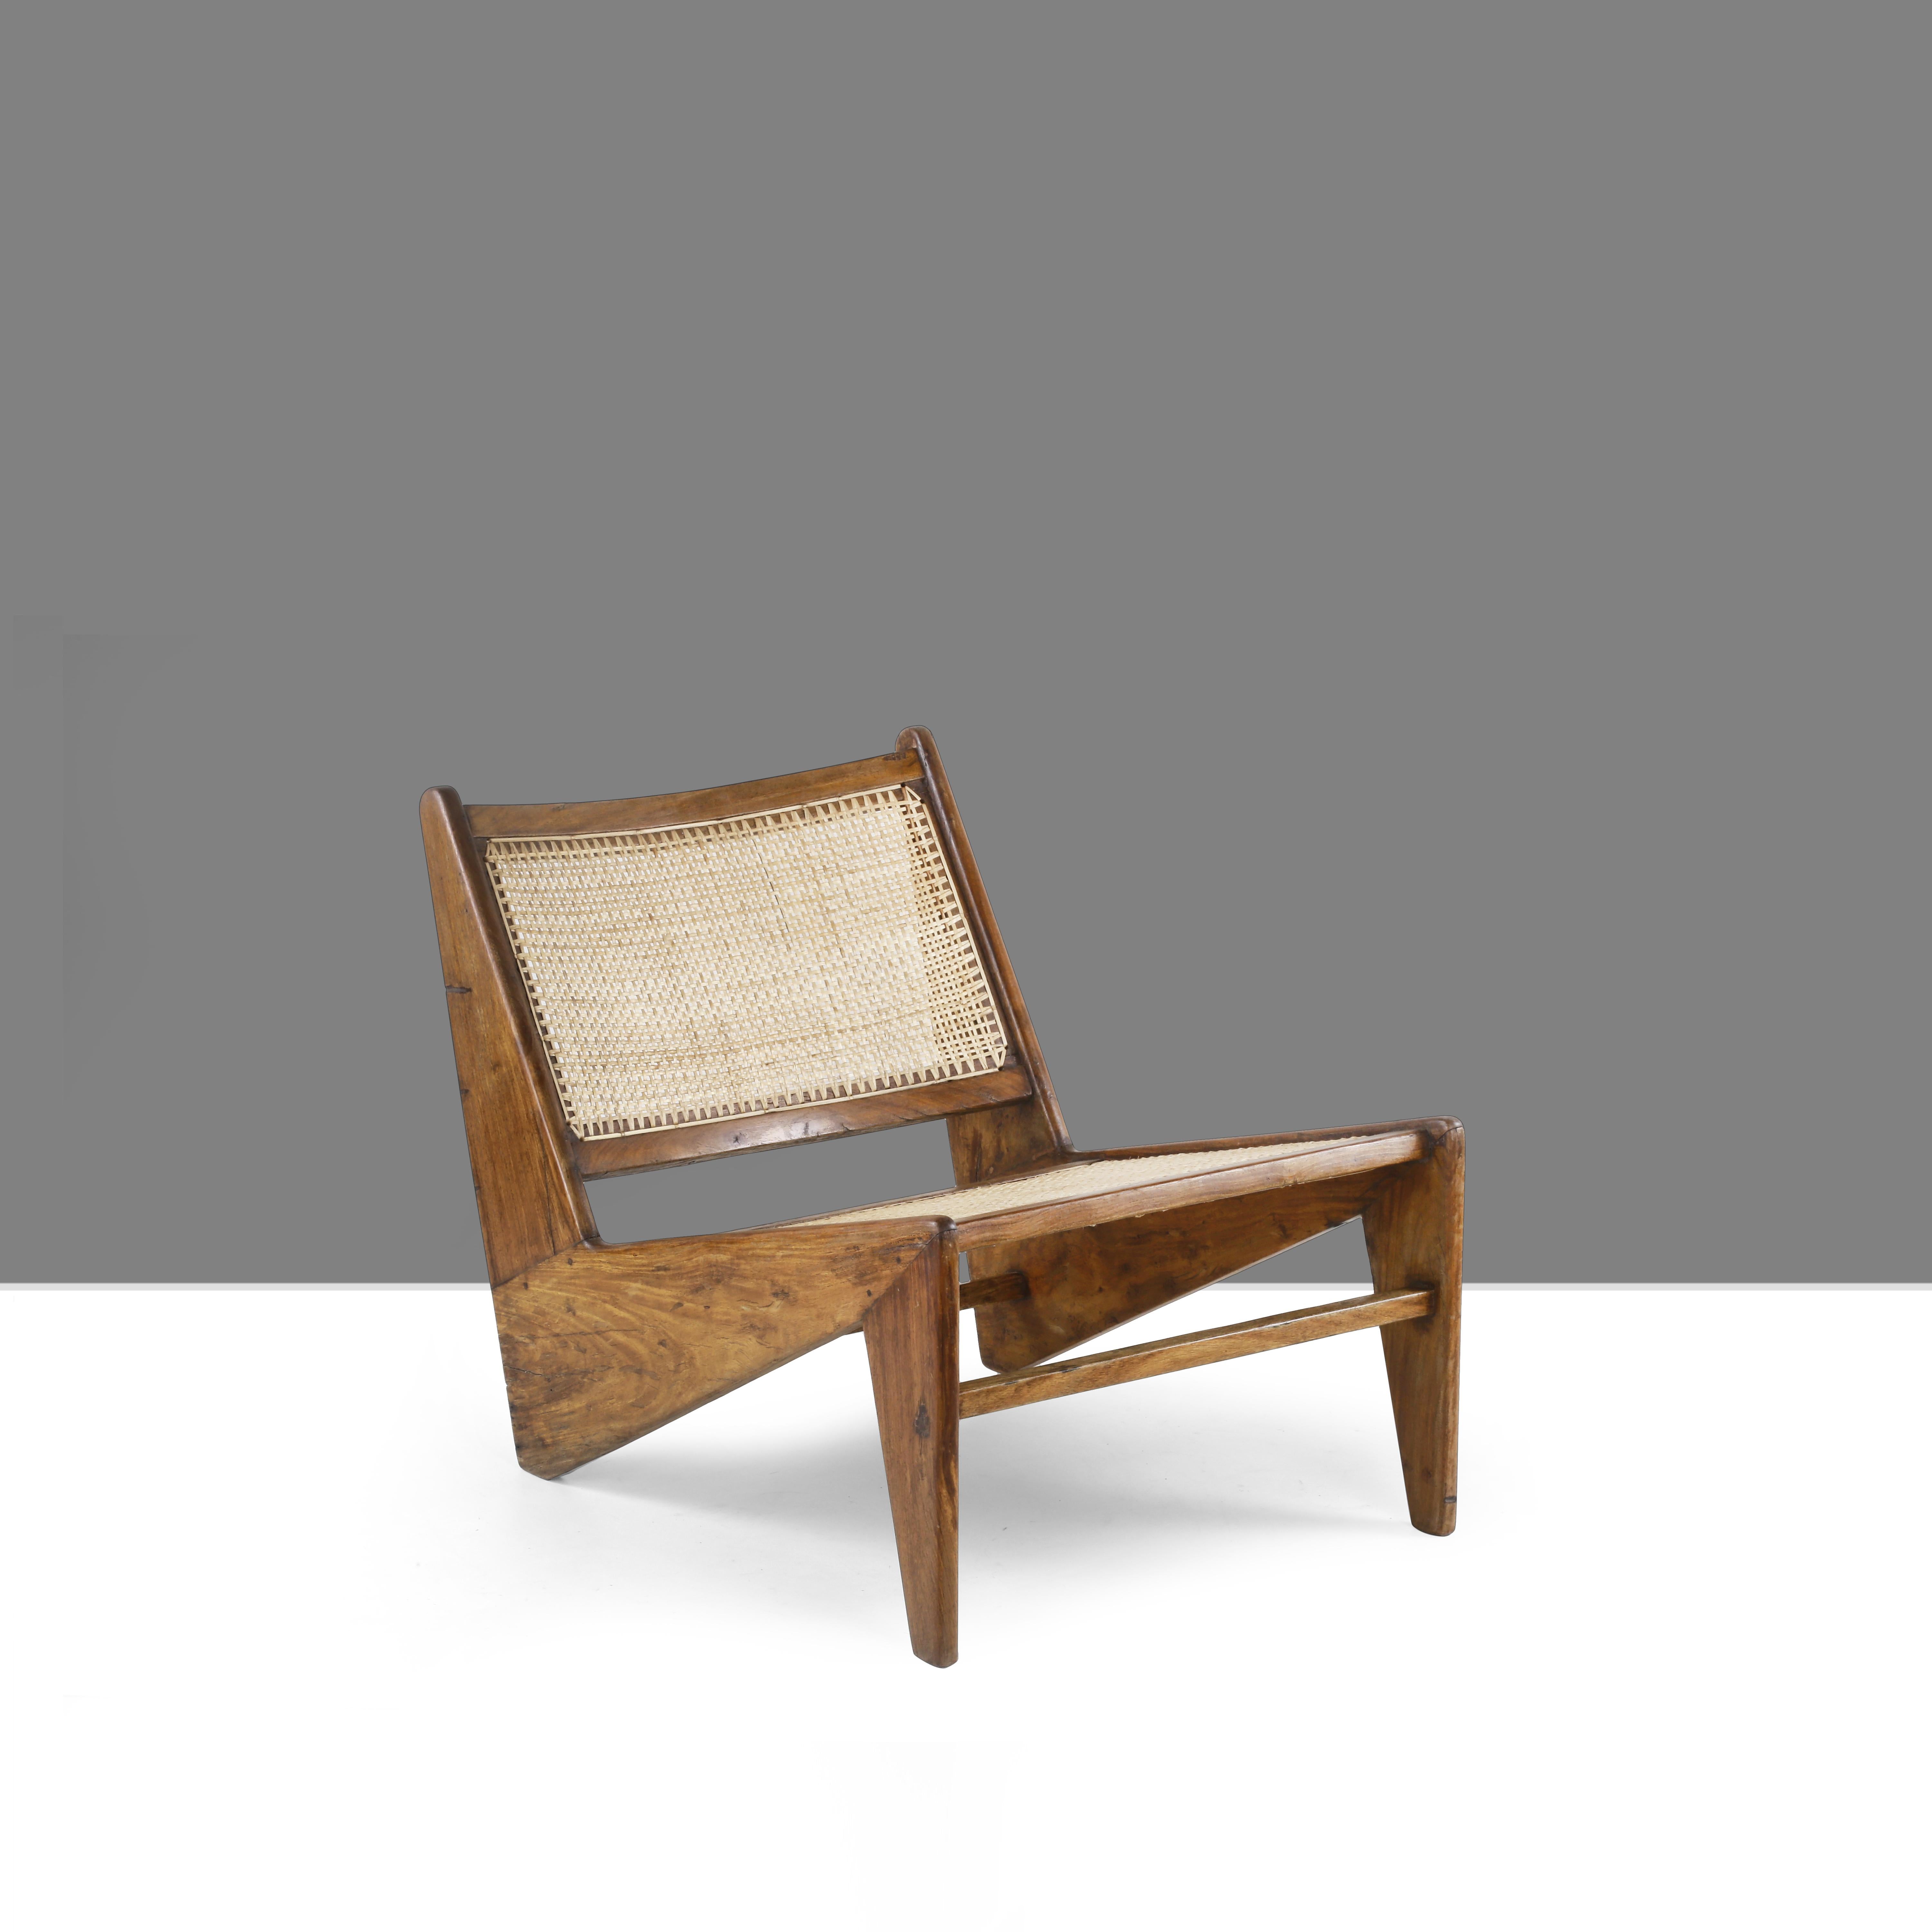 Cette chaise n'est pas seulement une pièce fantastique, c'est une icône du design. Enfin, c'est l'un des objets les plus célèbres de tous les objets de Chandigarh. Il est brut dans sa simplicité, incarnant une nonchalance expressive. La chaise